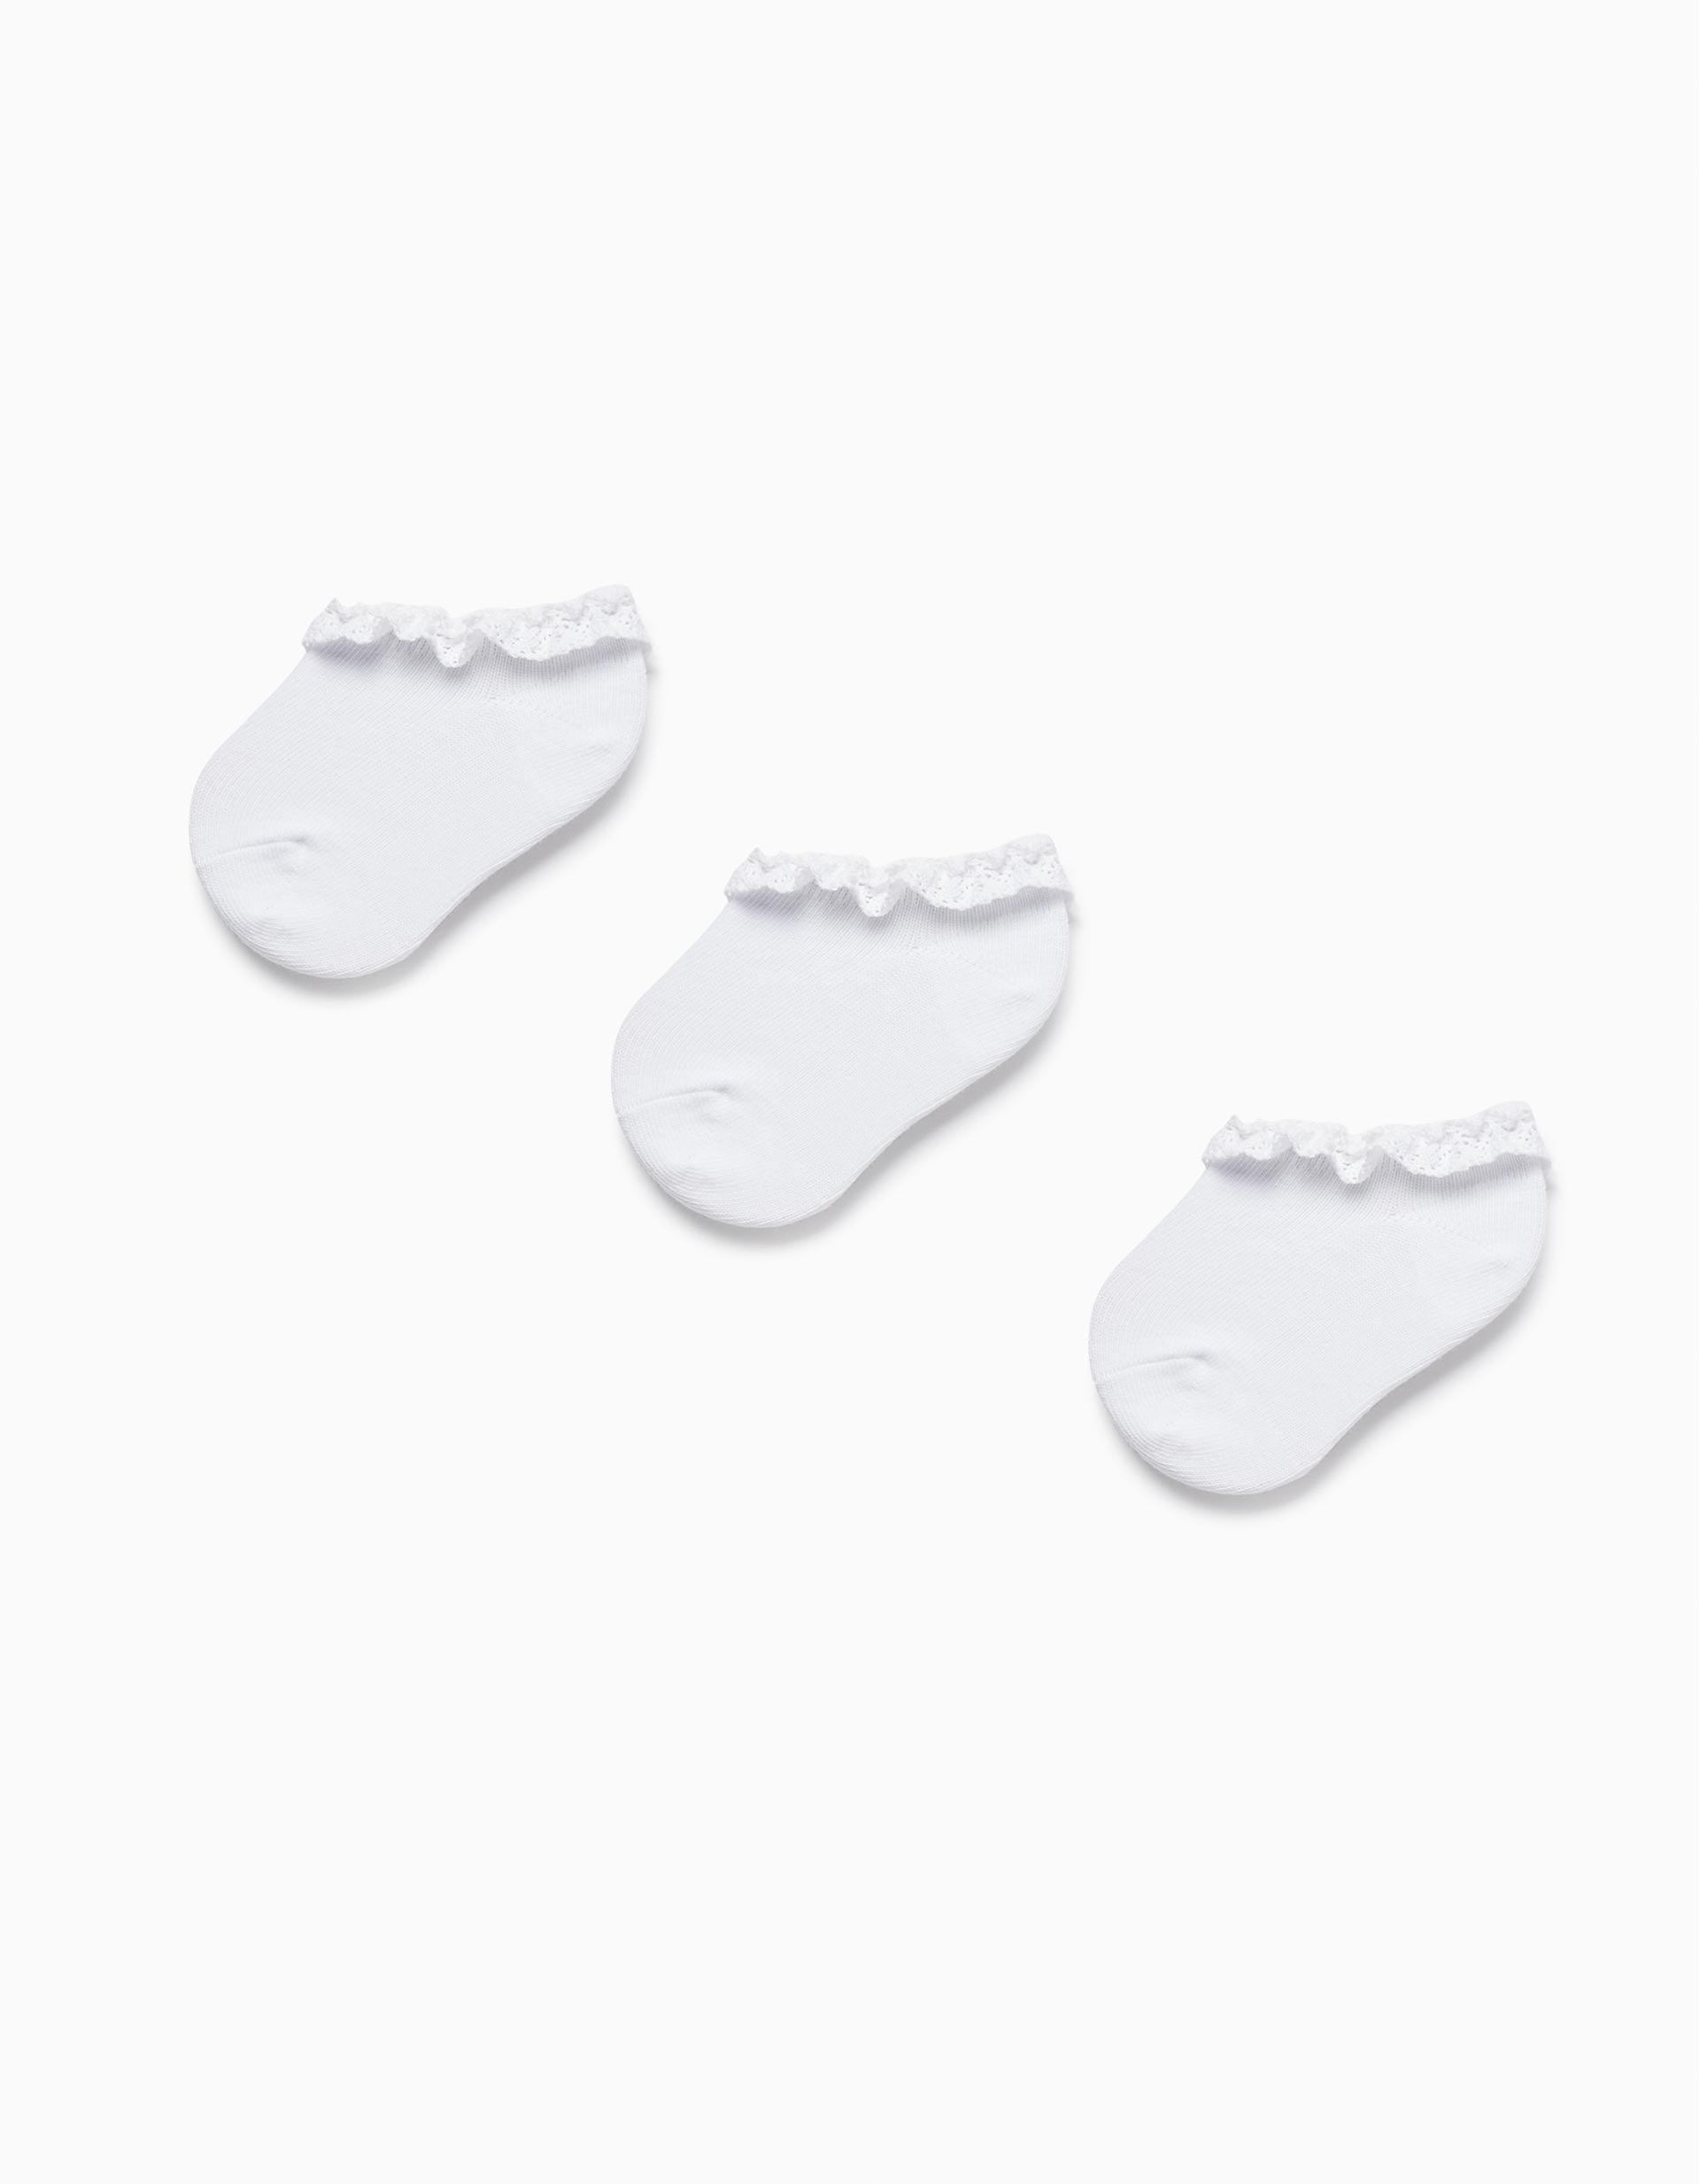 Zippy - White Socks - Set Of 3, Baby Girls